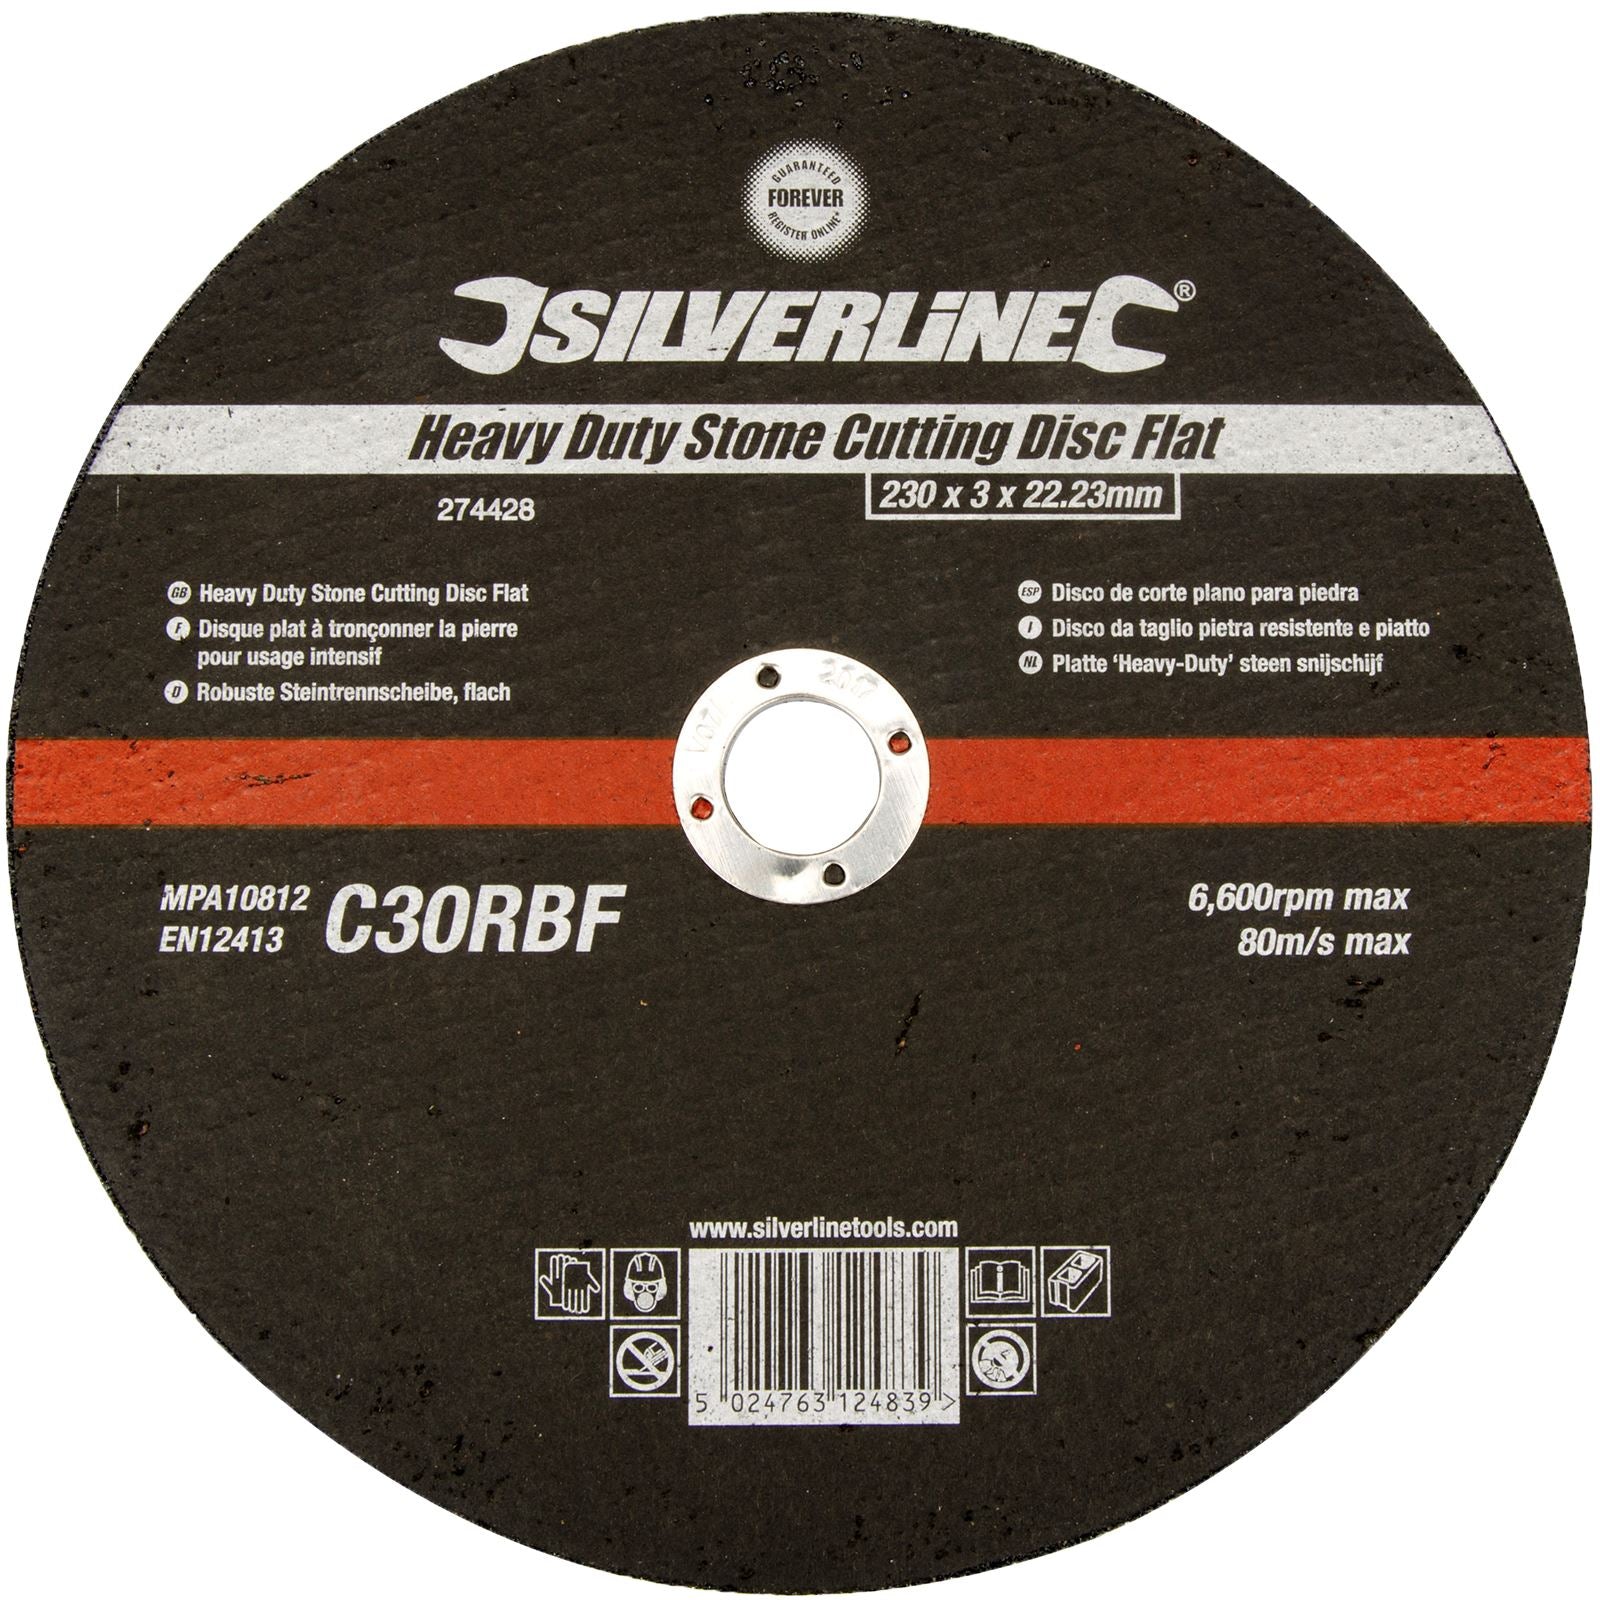 Silverline Heavy Duty Flat Stone Cutting Disc 230 x 3 x 22.23mm